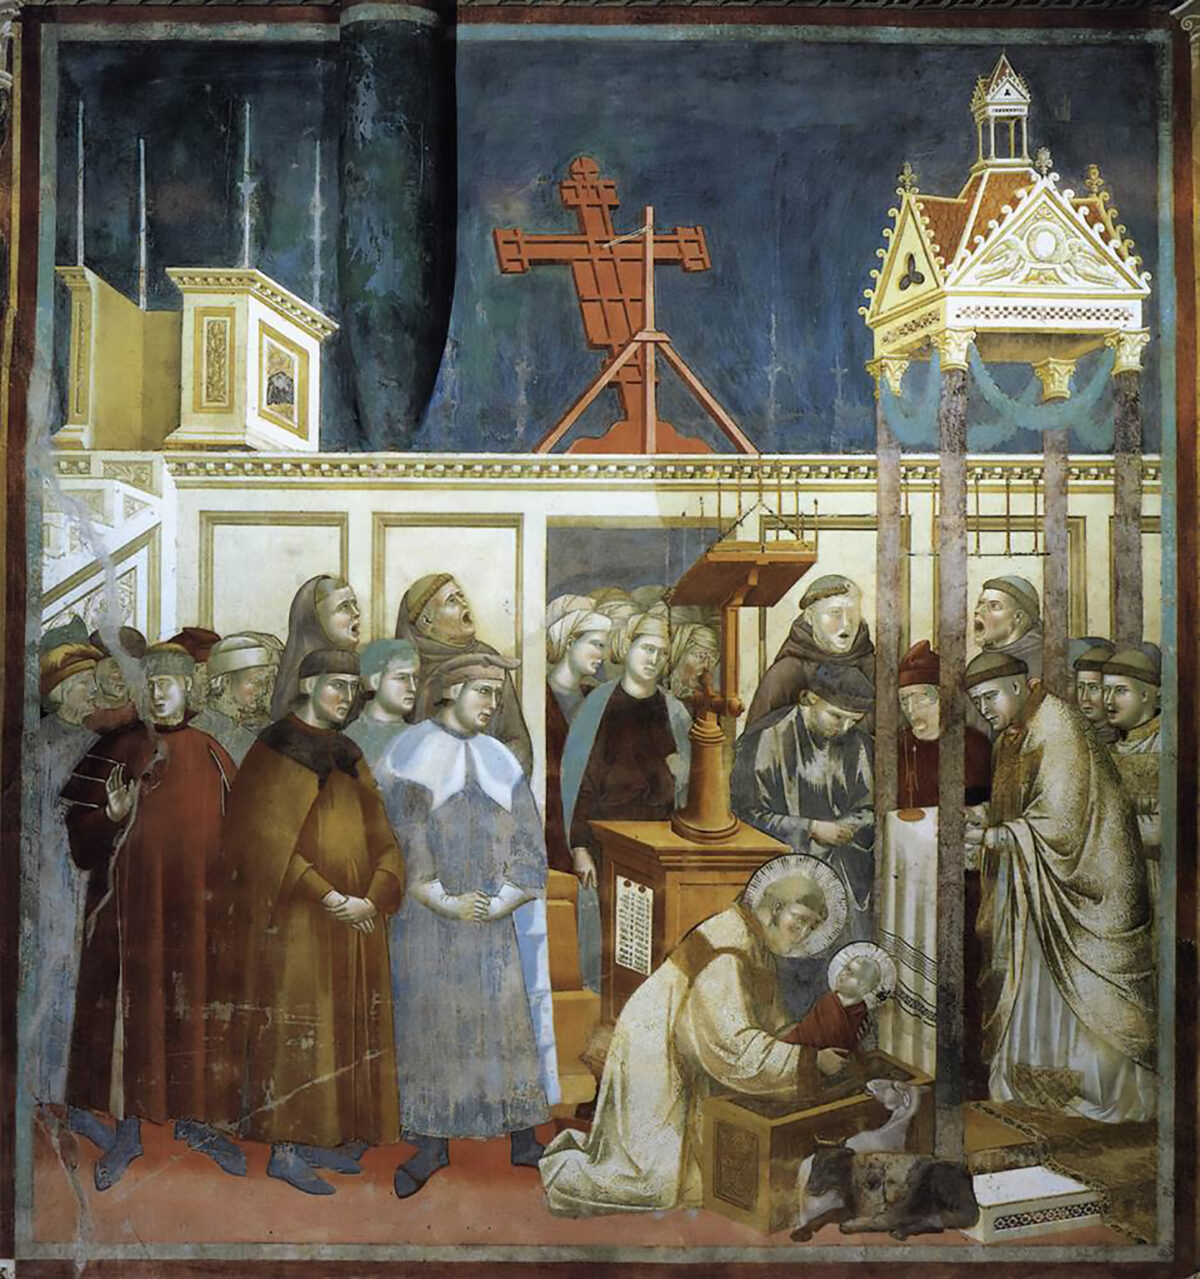 Tác phẩm “Thánh Francis của thành Assisi đang chuẩn bị Máng cỏ Giáng Sinh tại xứ Grecchio” của họa sĩ Giotto, năm 1297–1300. Tranh bích họa. Vương cung thánh đường Thánh Francis thành Assisi, thị trấn Assisi, nước Ý. (Ảnh: Tài sản công)